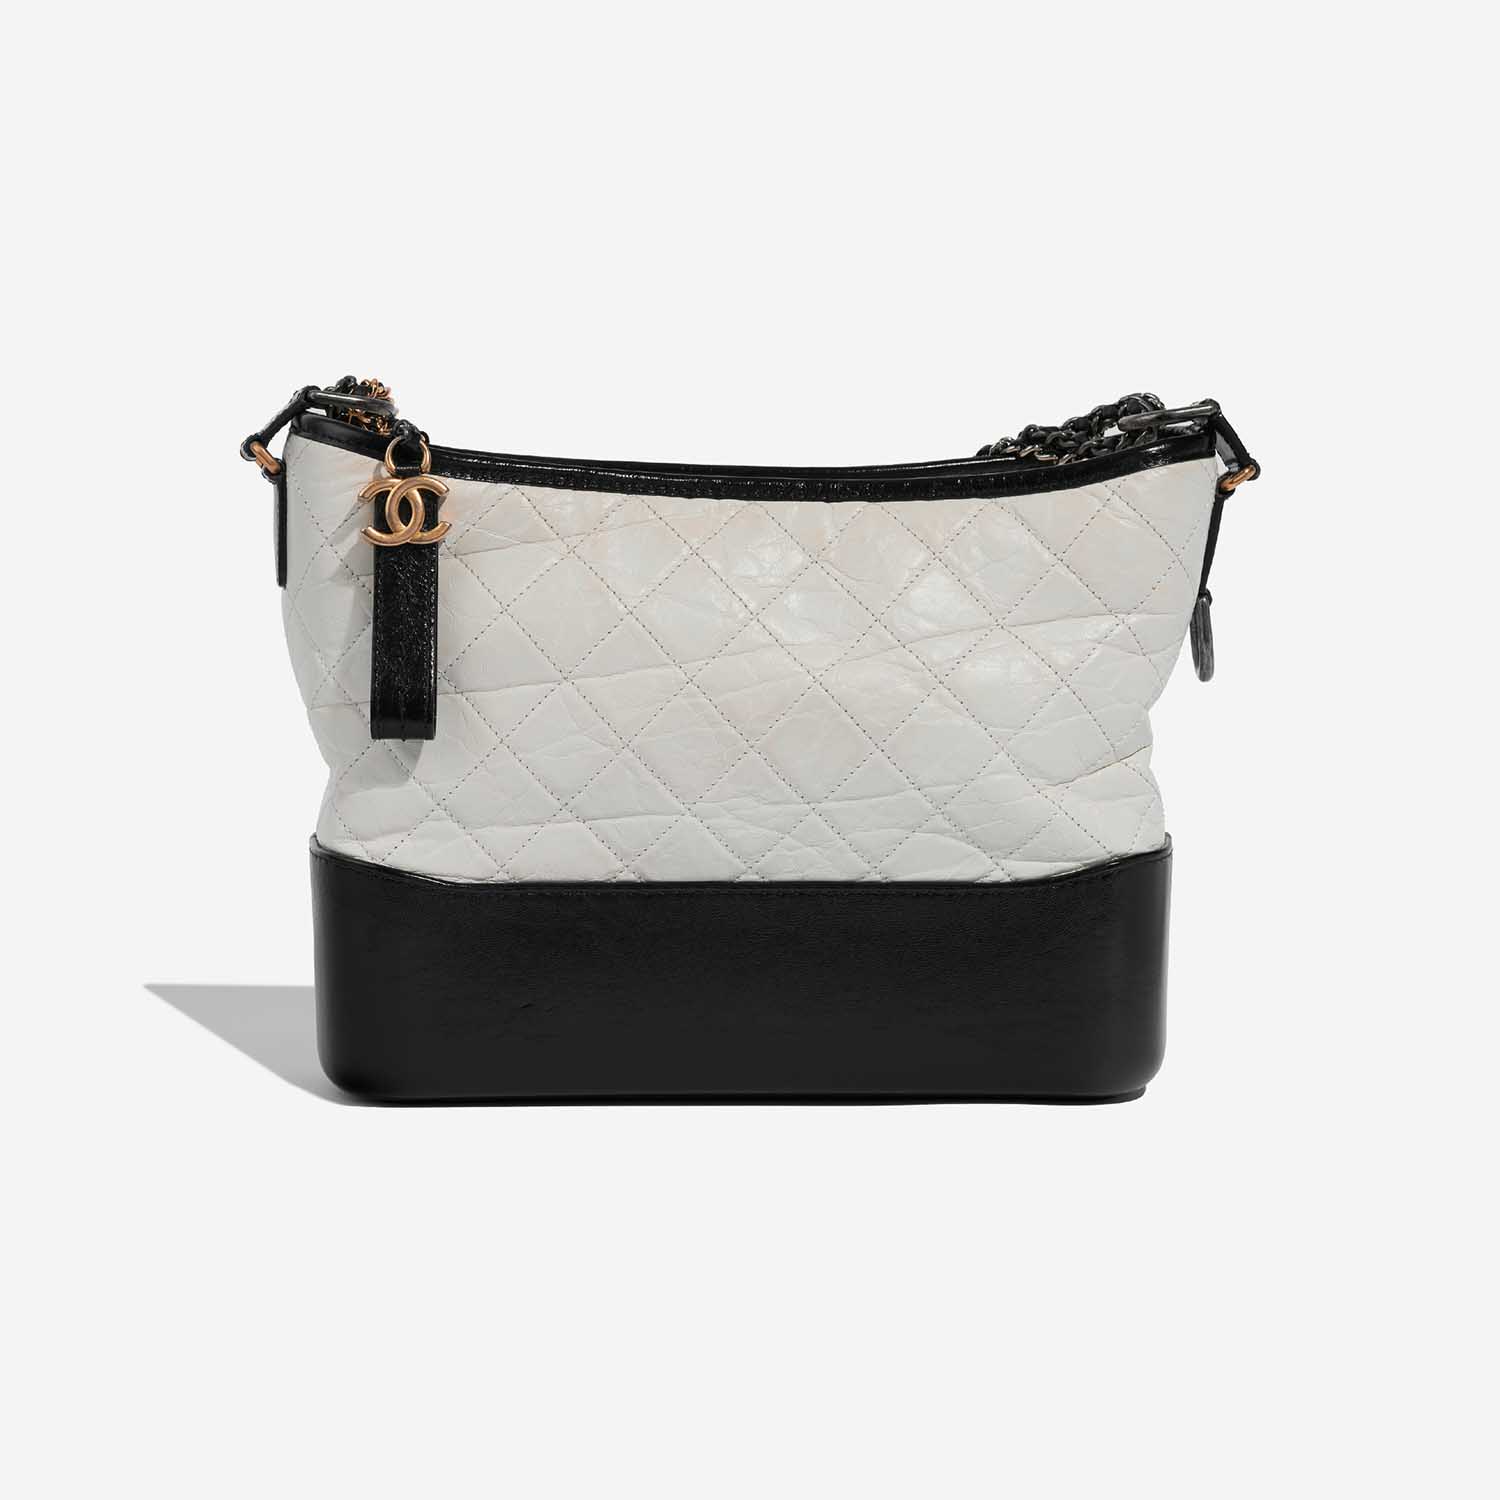 Chanel Gabrielle Medium Black-White Back | Verkaufen Sie Ihre Designer-Tasche auf Saclab.com